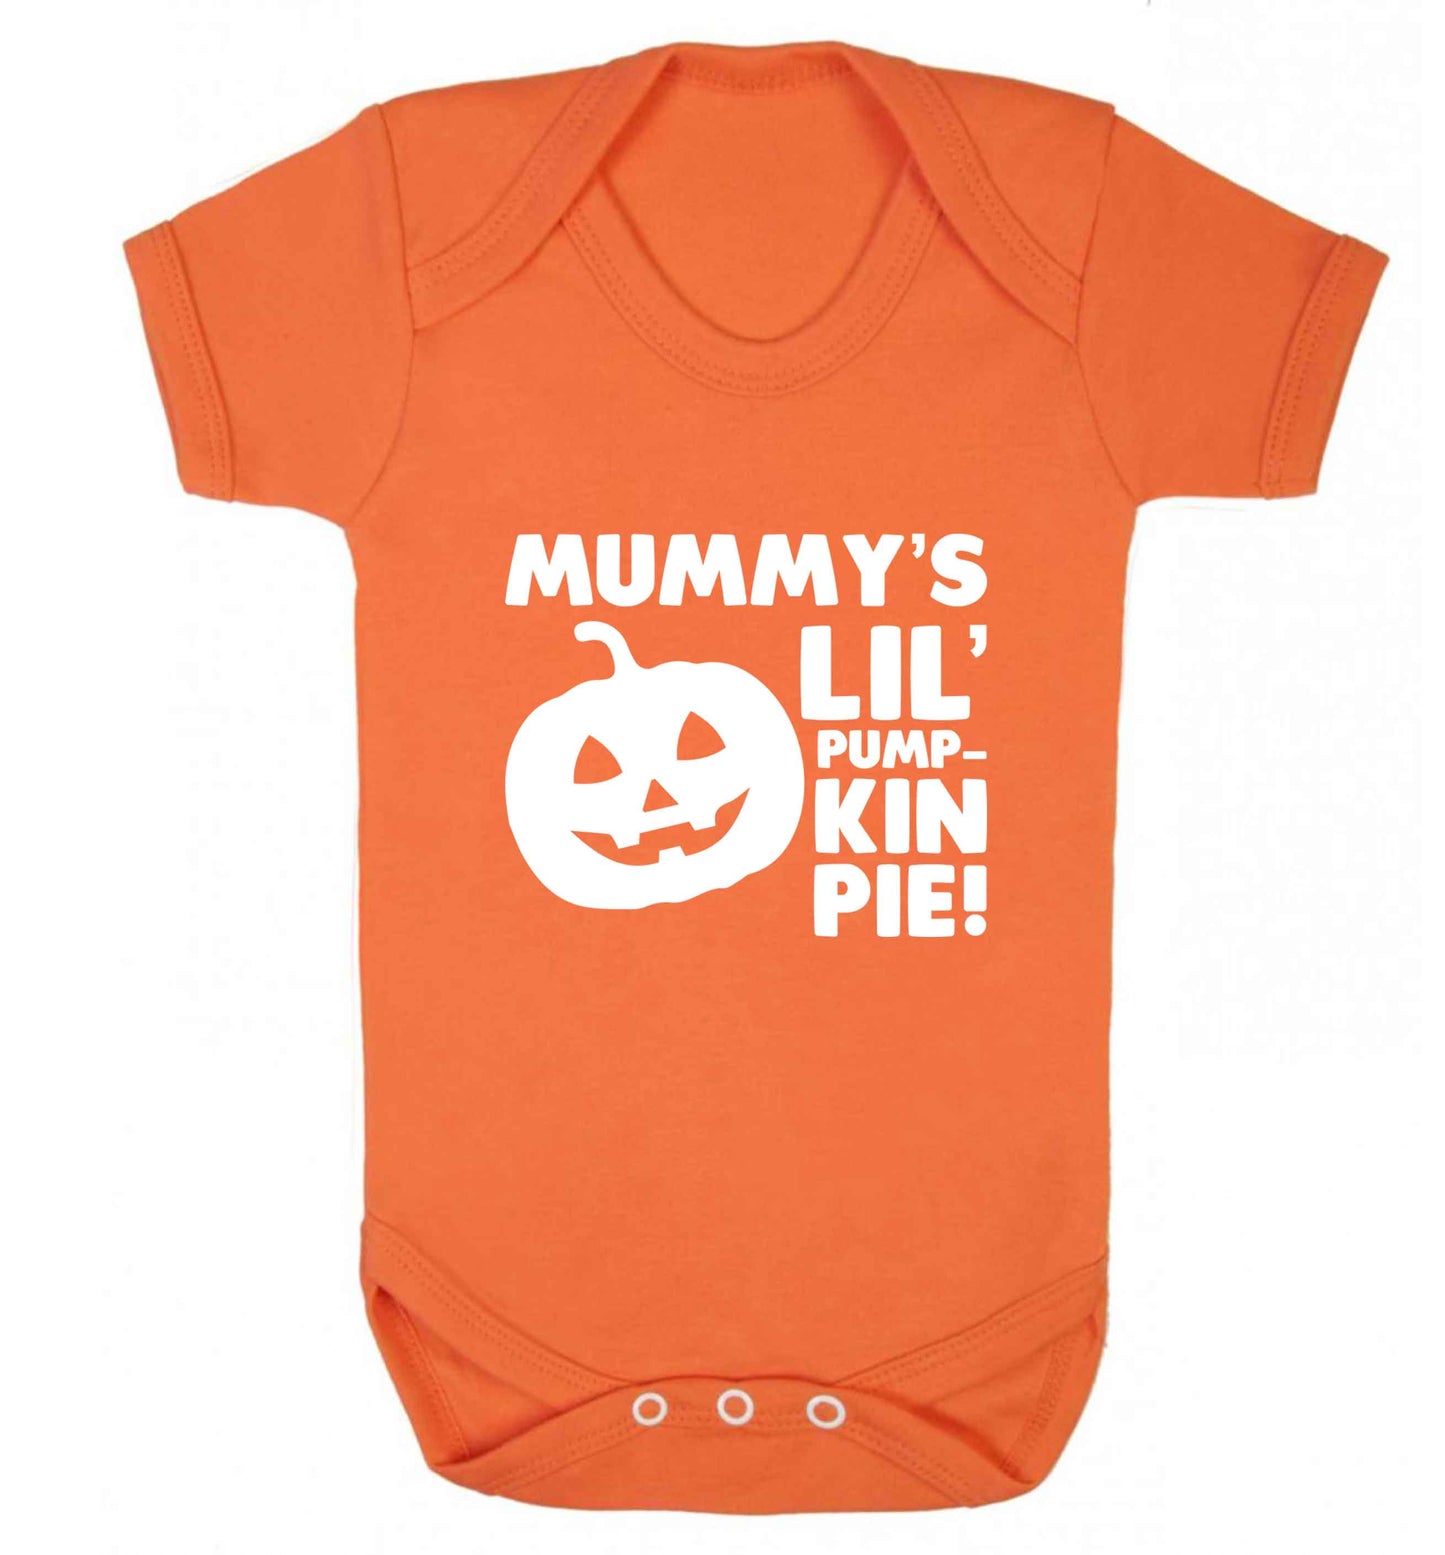 Mummy's lil' pumpkin pie baby vest orange 18-24 months